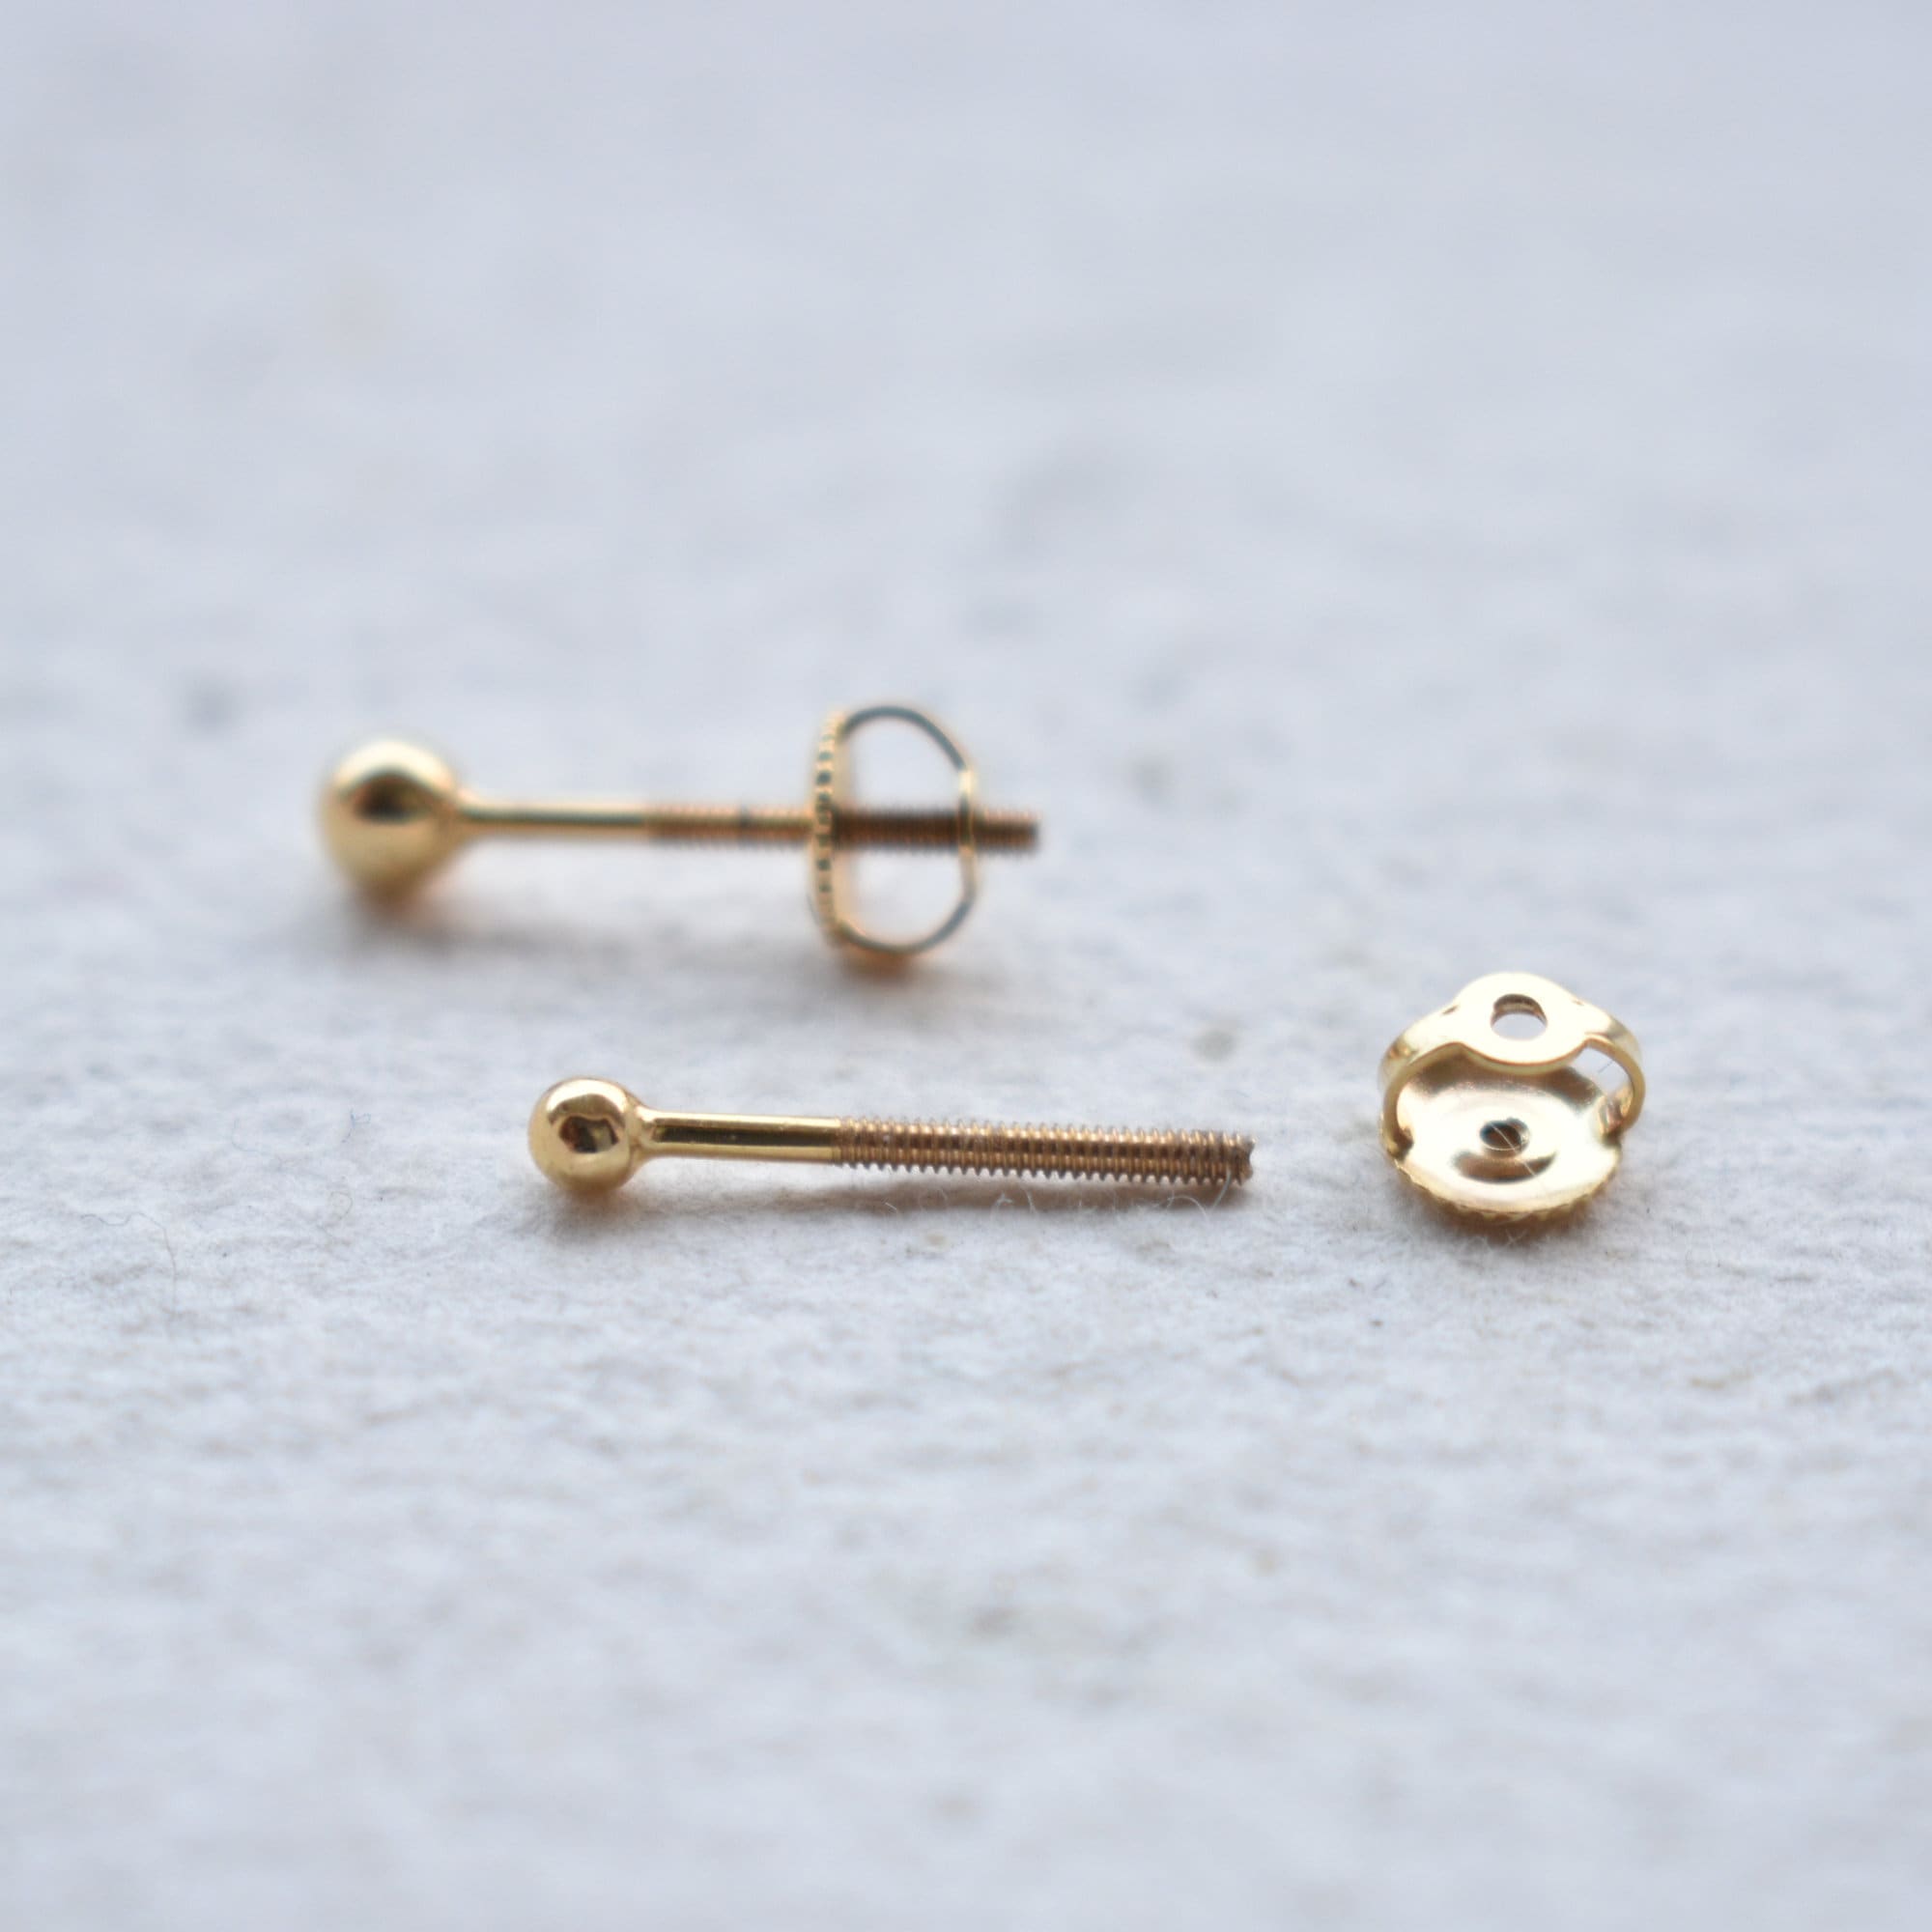 Golden Round Dumbbell Earrings Ear Piercing Studs for Men & Women